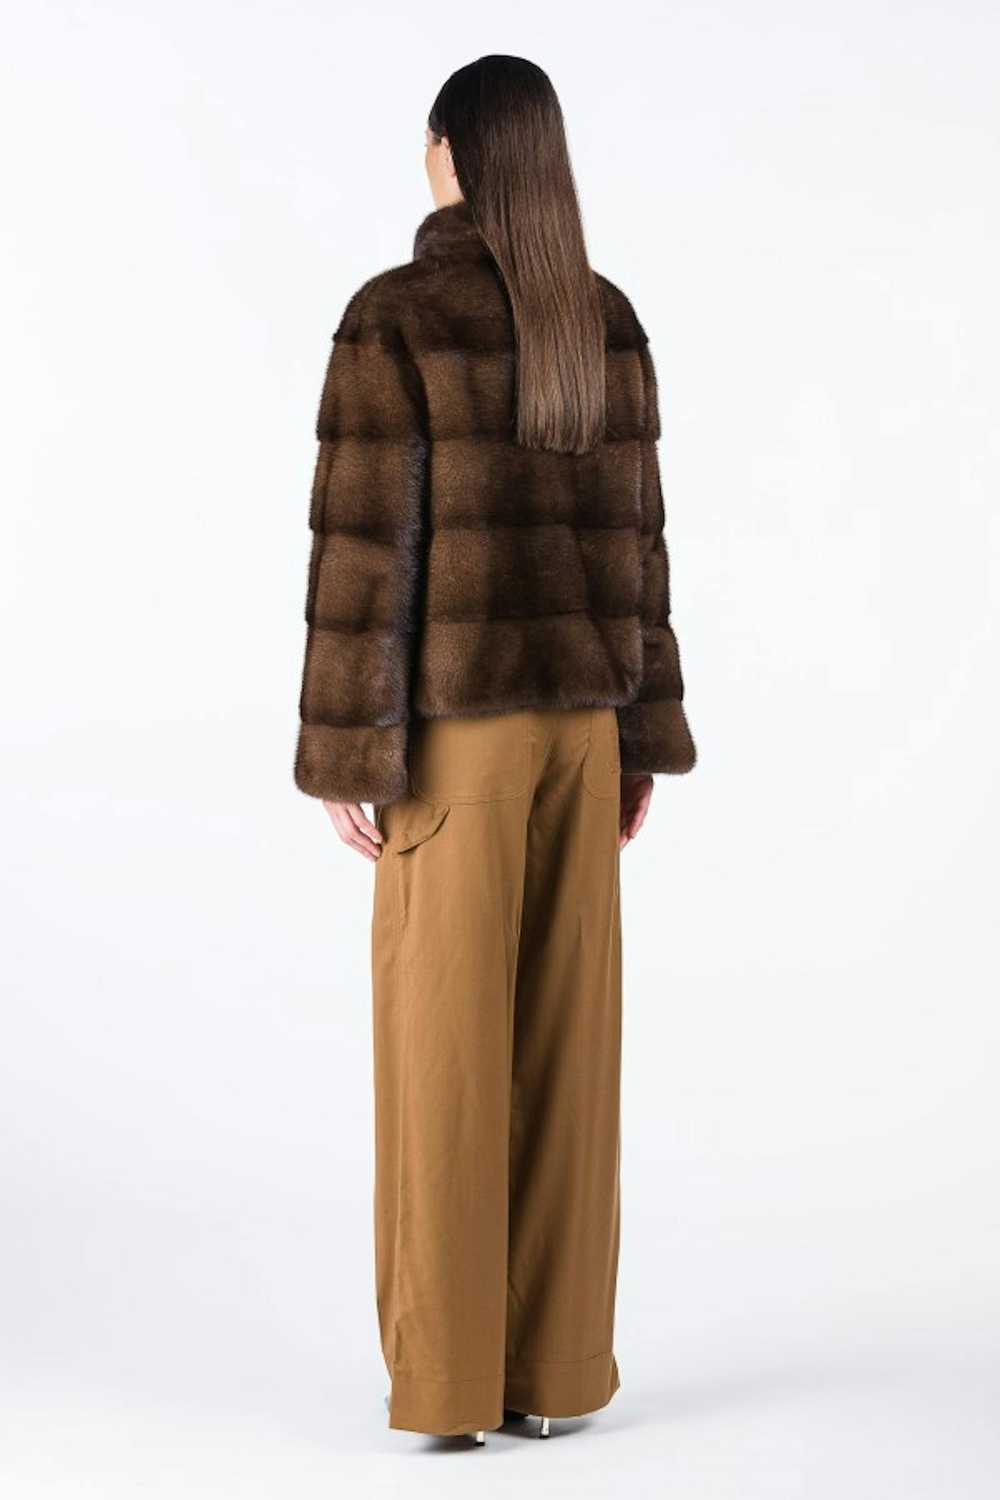 Mink Fur Coat WOMEN'S SHORT BROWN MINK COAT - image 3